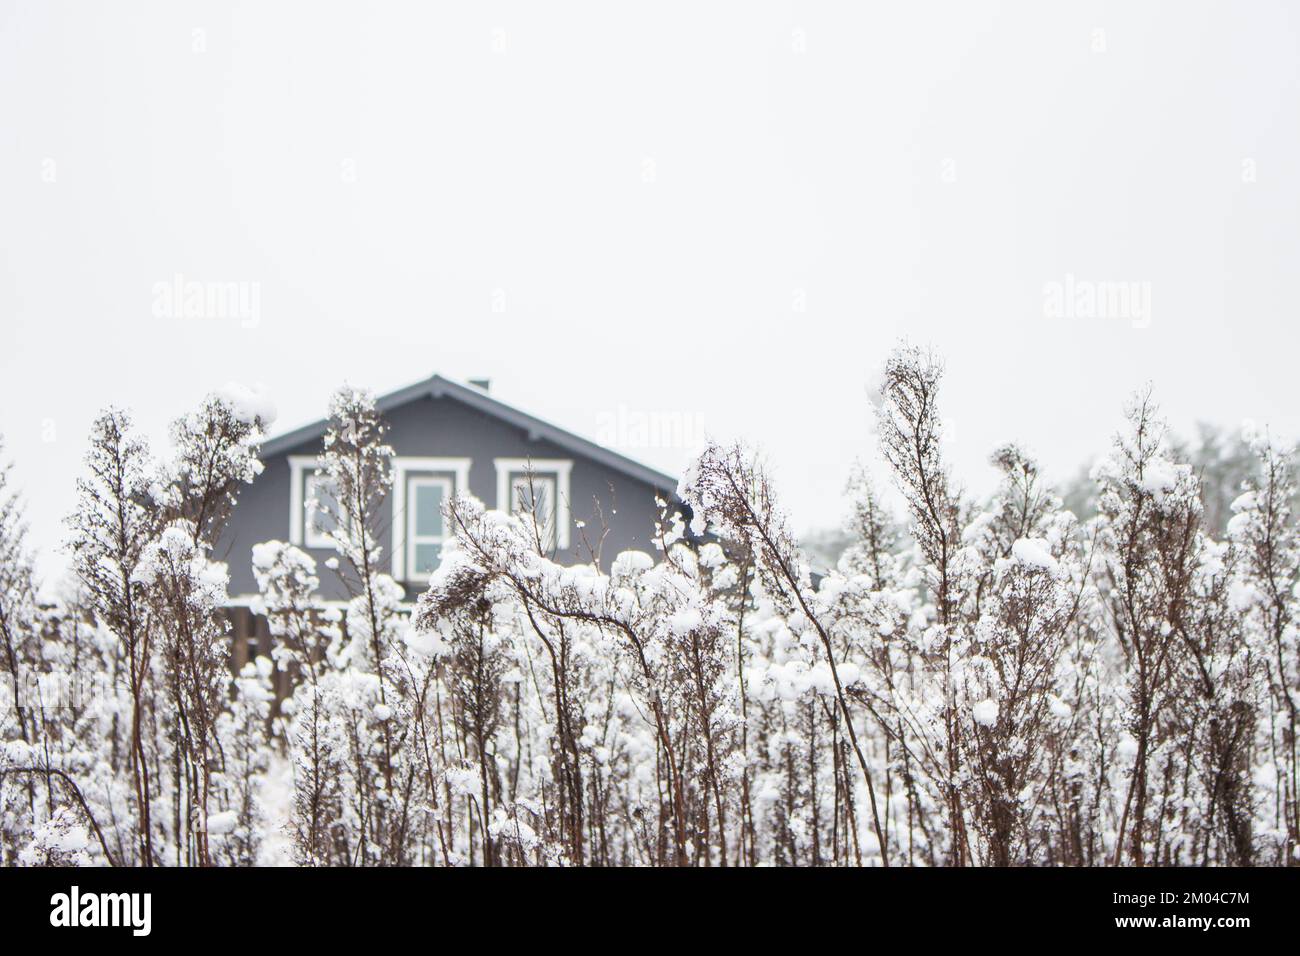 Ein Landhaus auf einer verschneiten Wiese. Wunderschöne Winterlandschaft. Winterferienkonzept. Hütte im Schnee und gefrorener Wald. Kaltes Wetter. Ein Dorf im Schnee Stockfoto